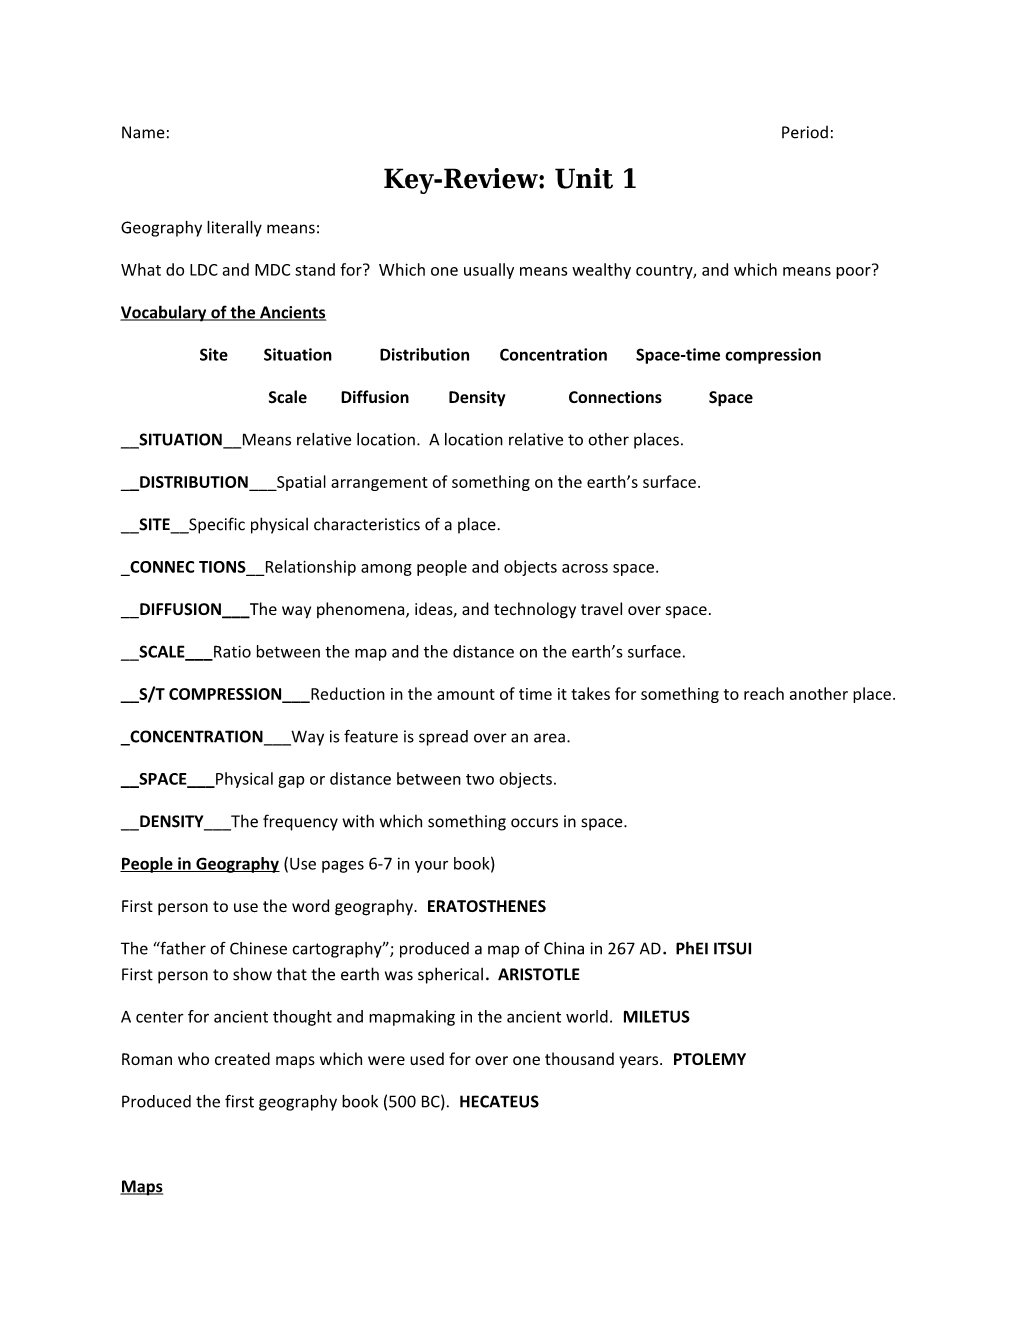 Key-Review:Unit 1